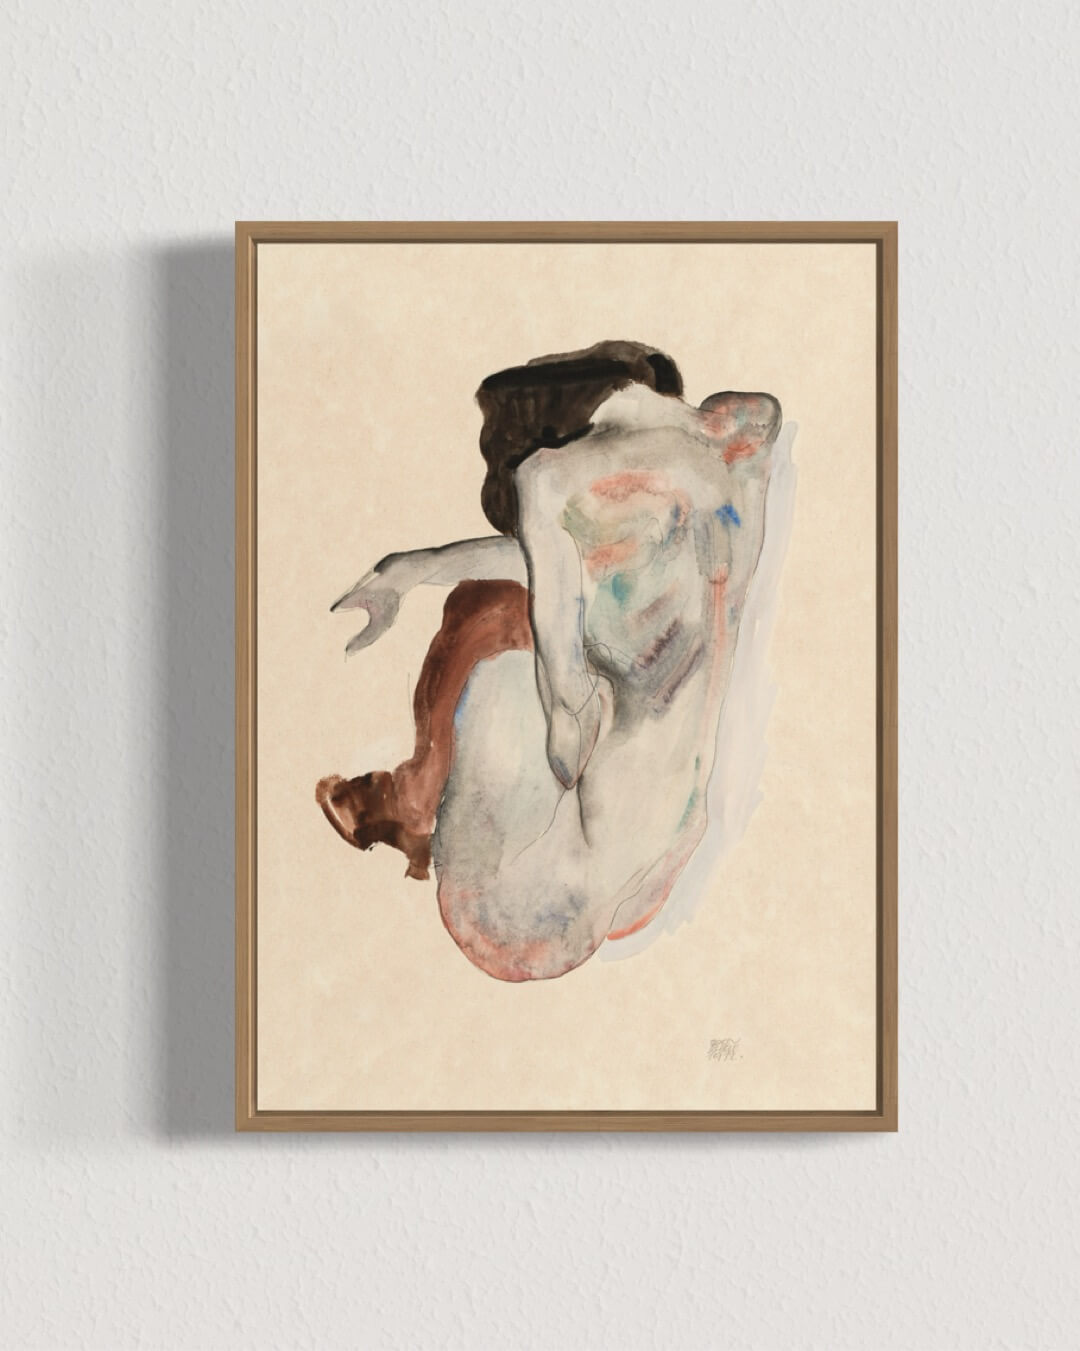 Naked lady af Egon Schiele